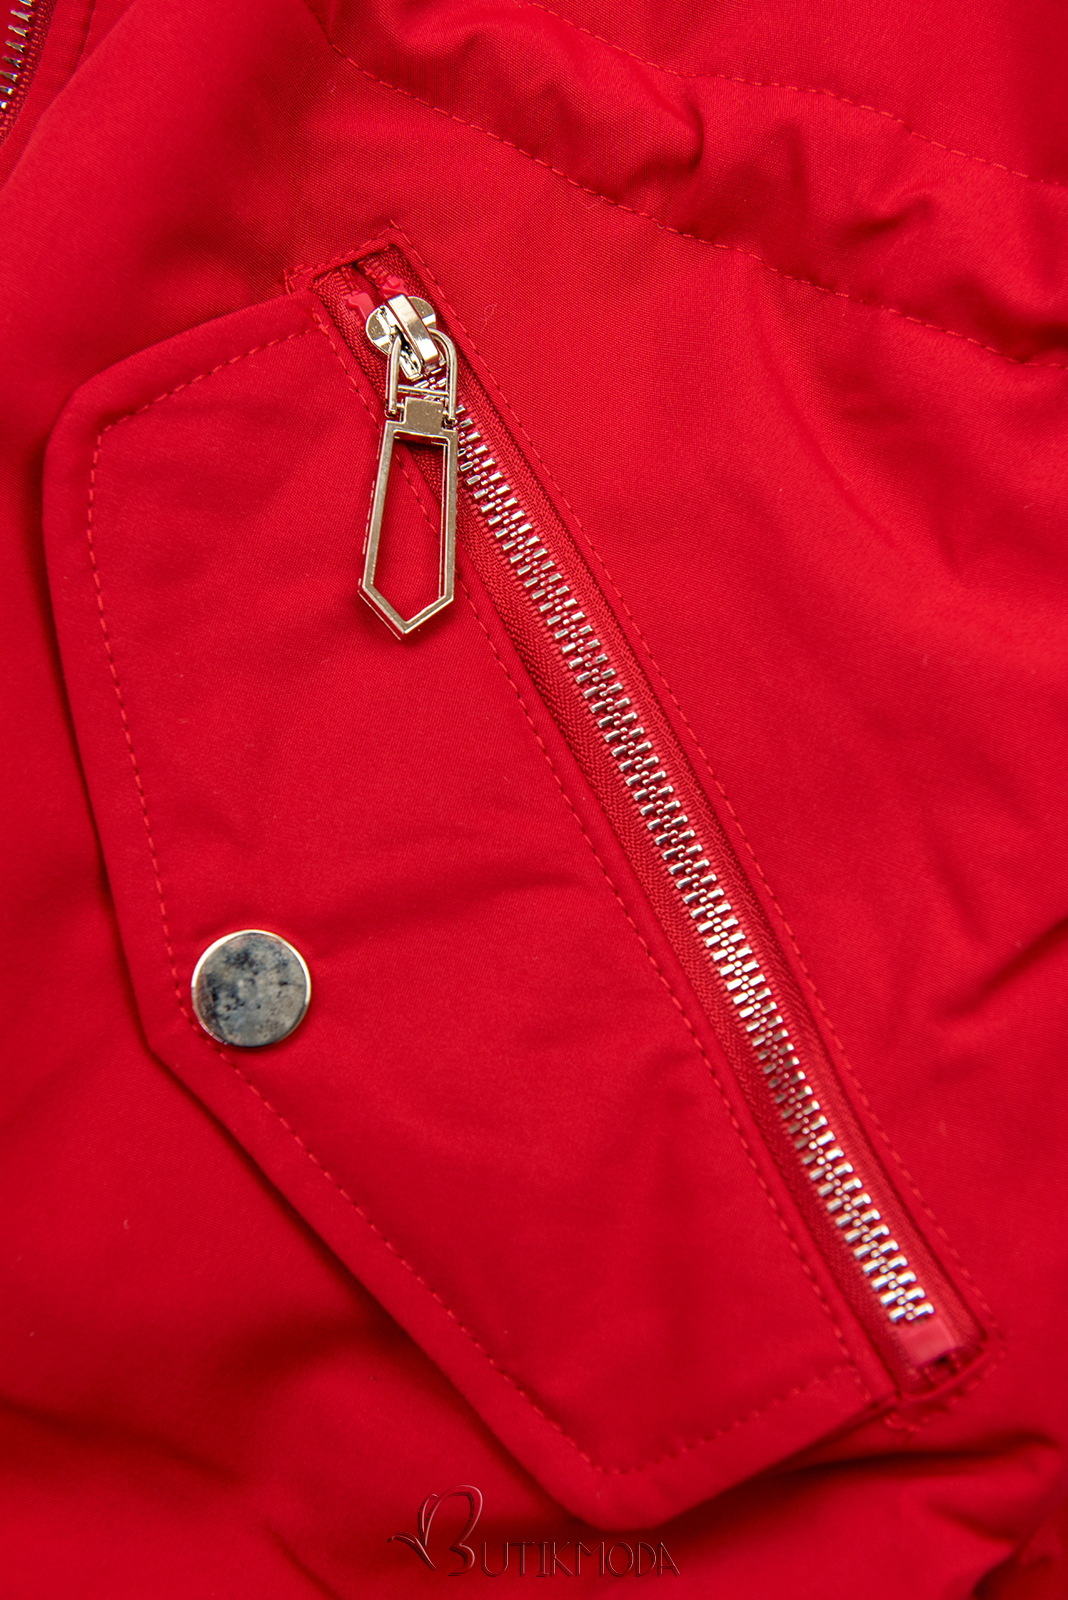 Piros színű téli kabát barna színű műszőrmével